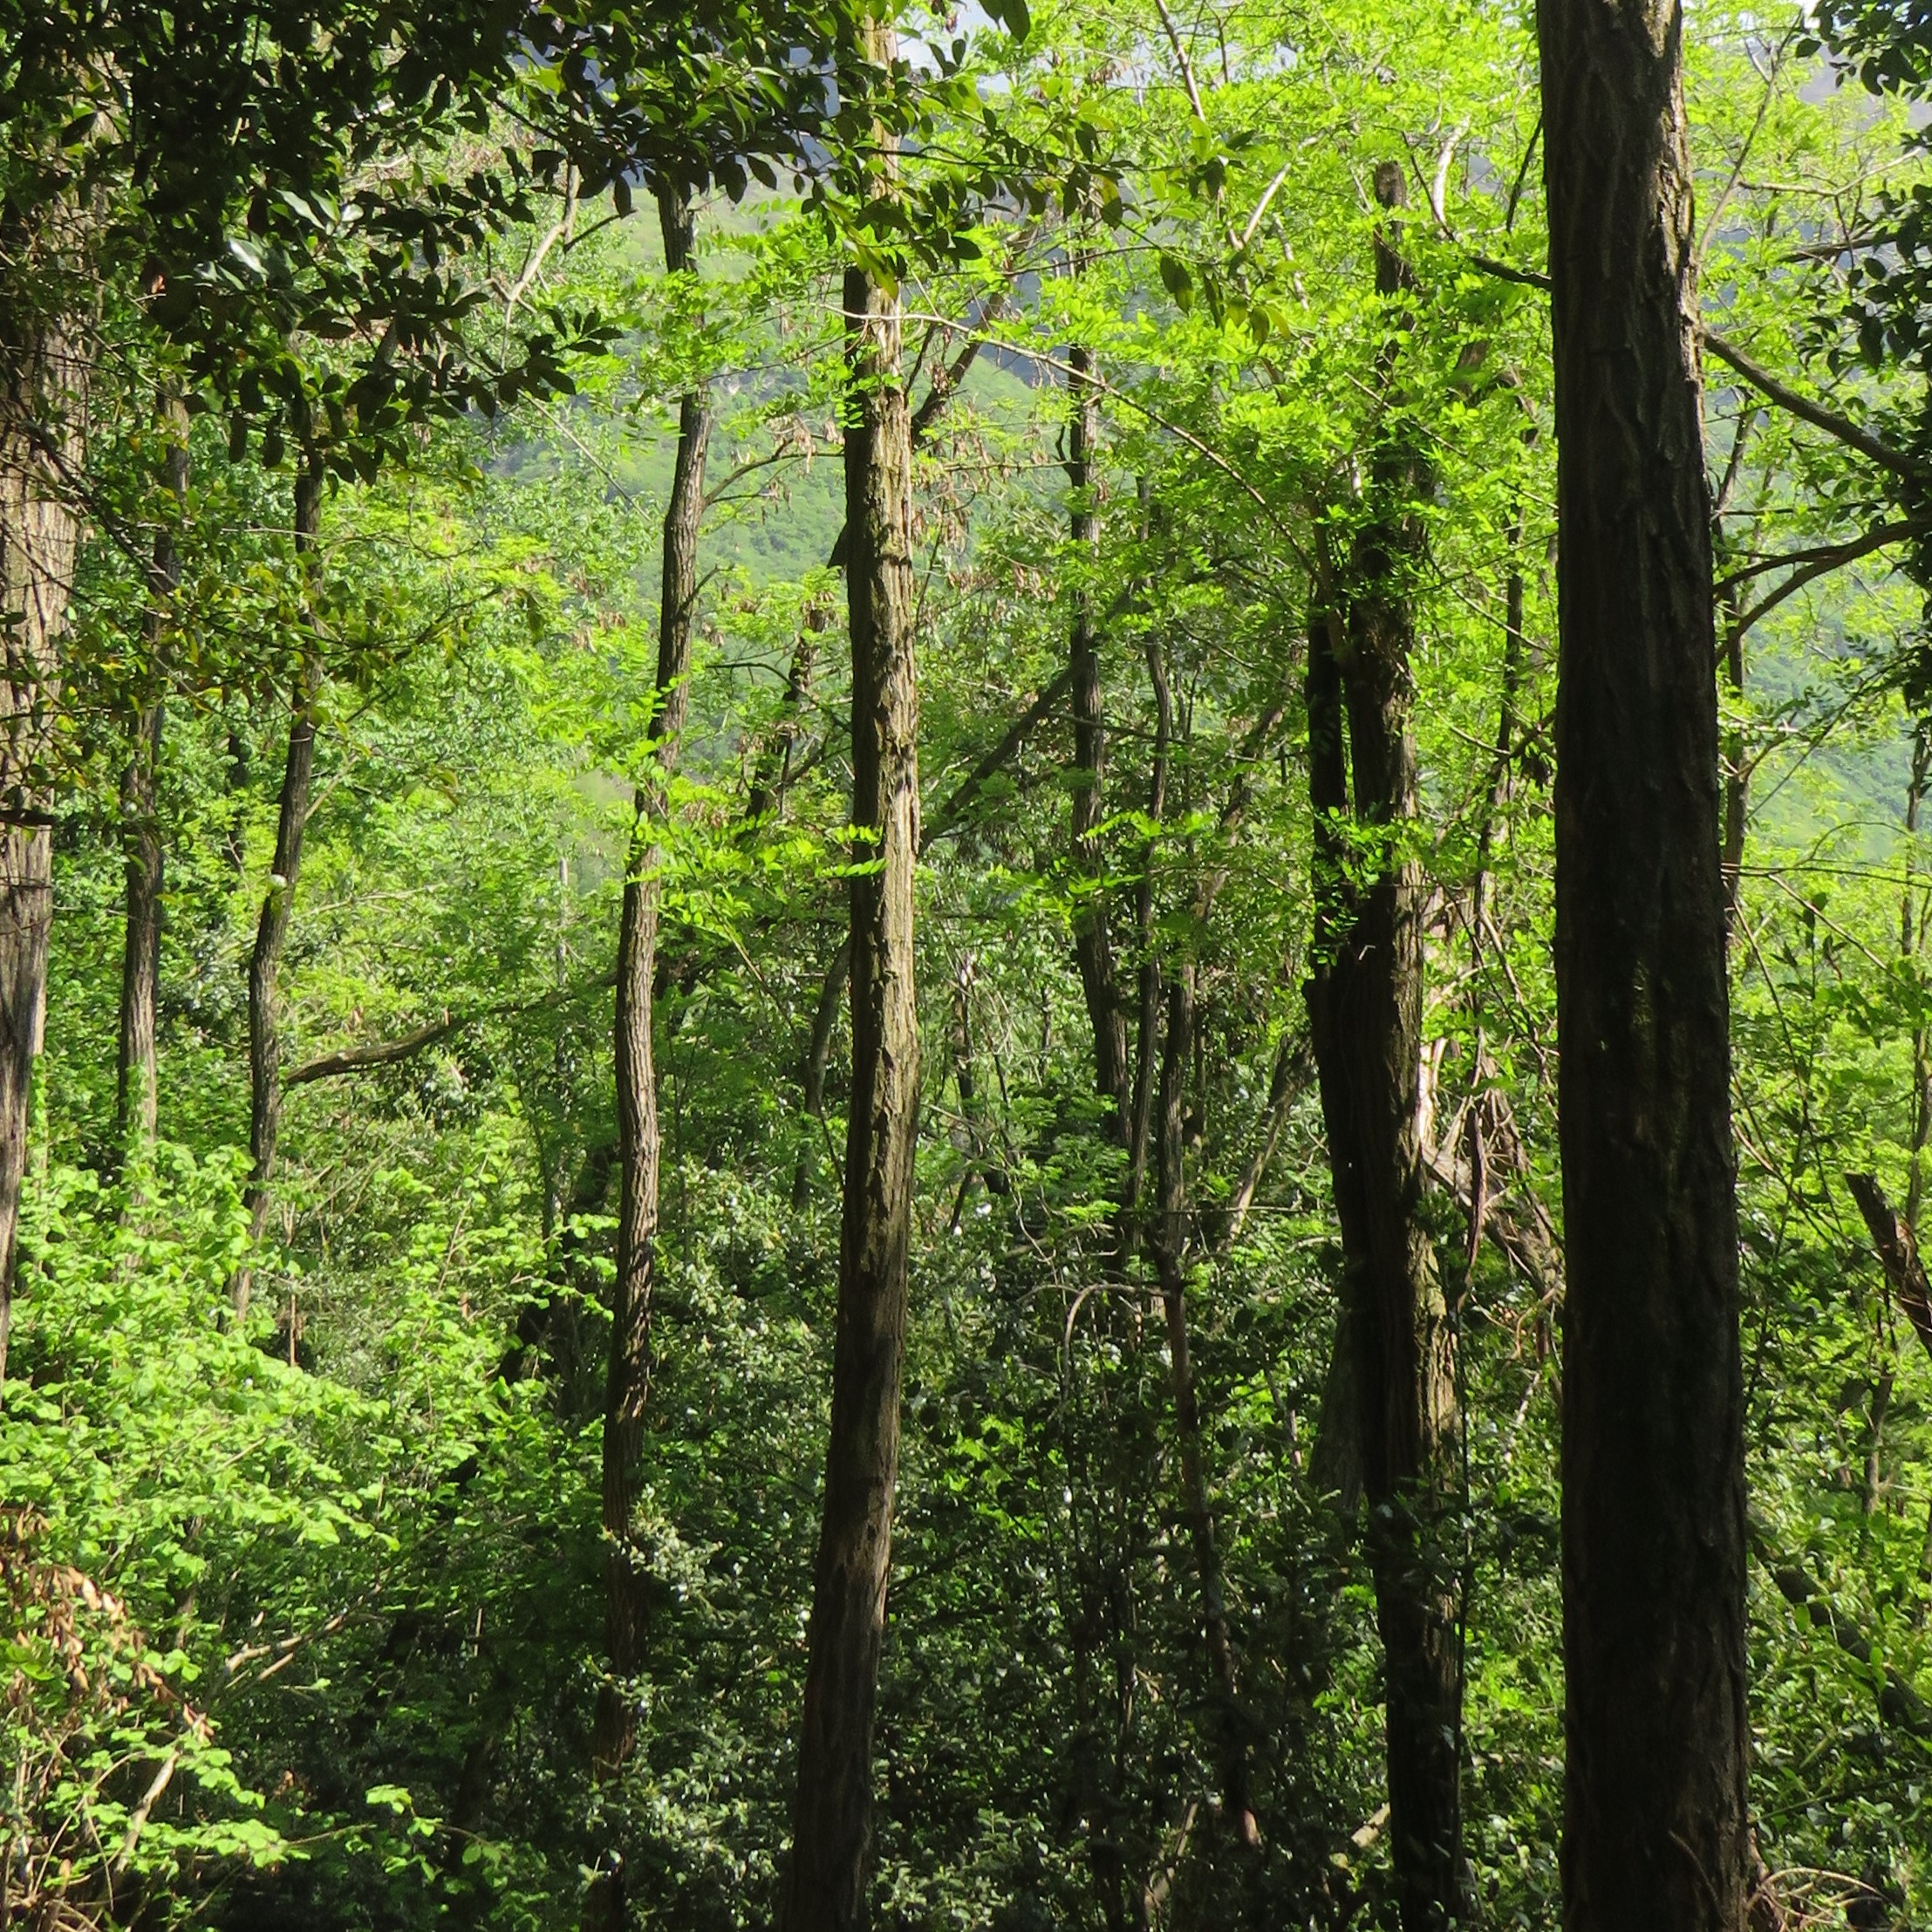 Bois de robinier pour la production de grappa - un potentiel intéressant pour une espèce d'arbre invasive?